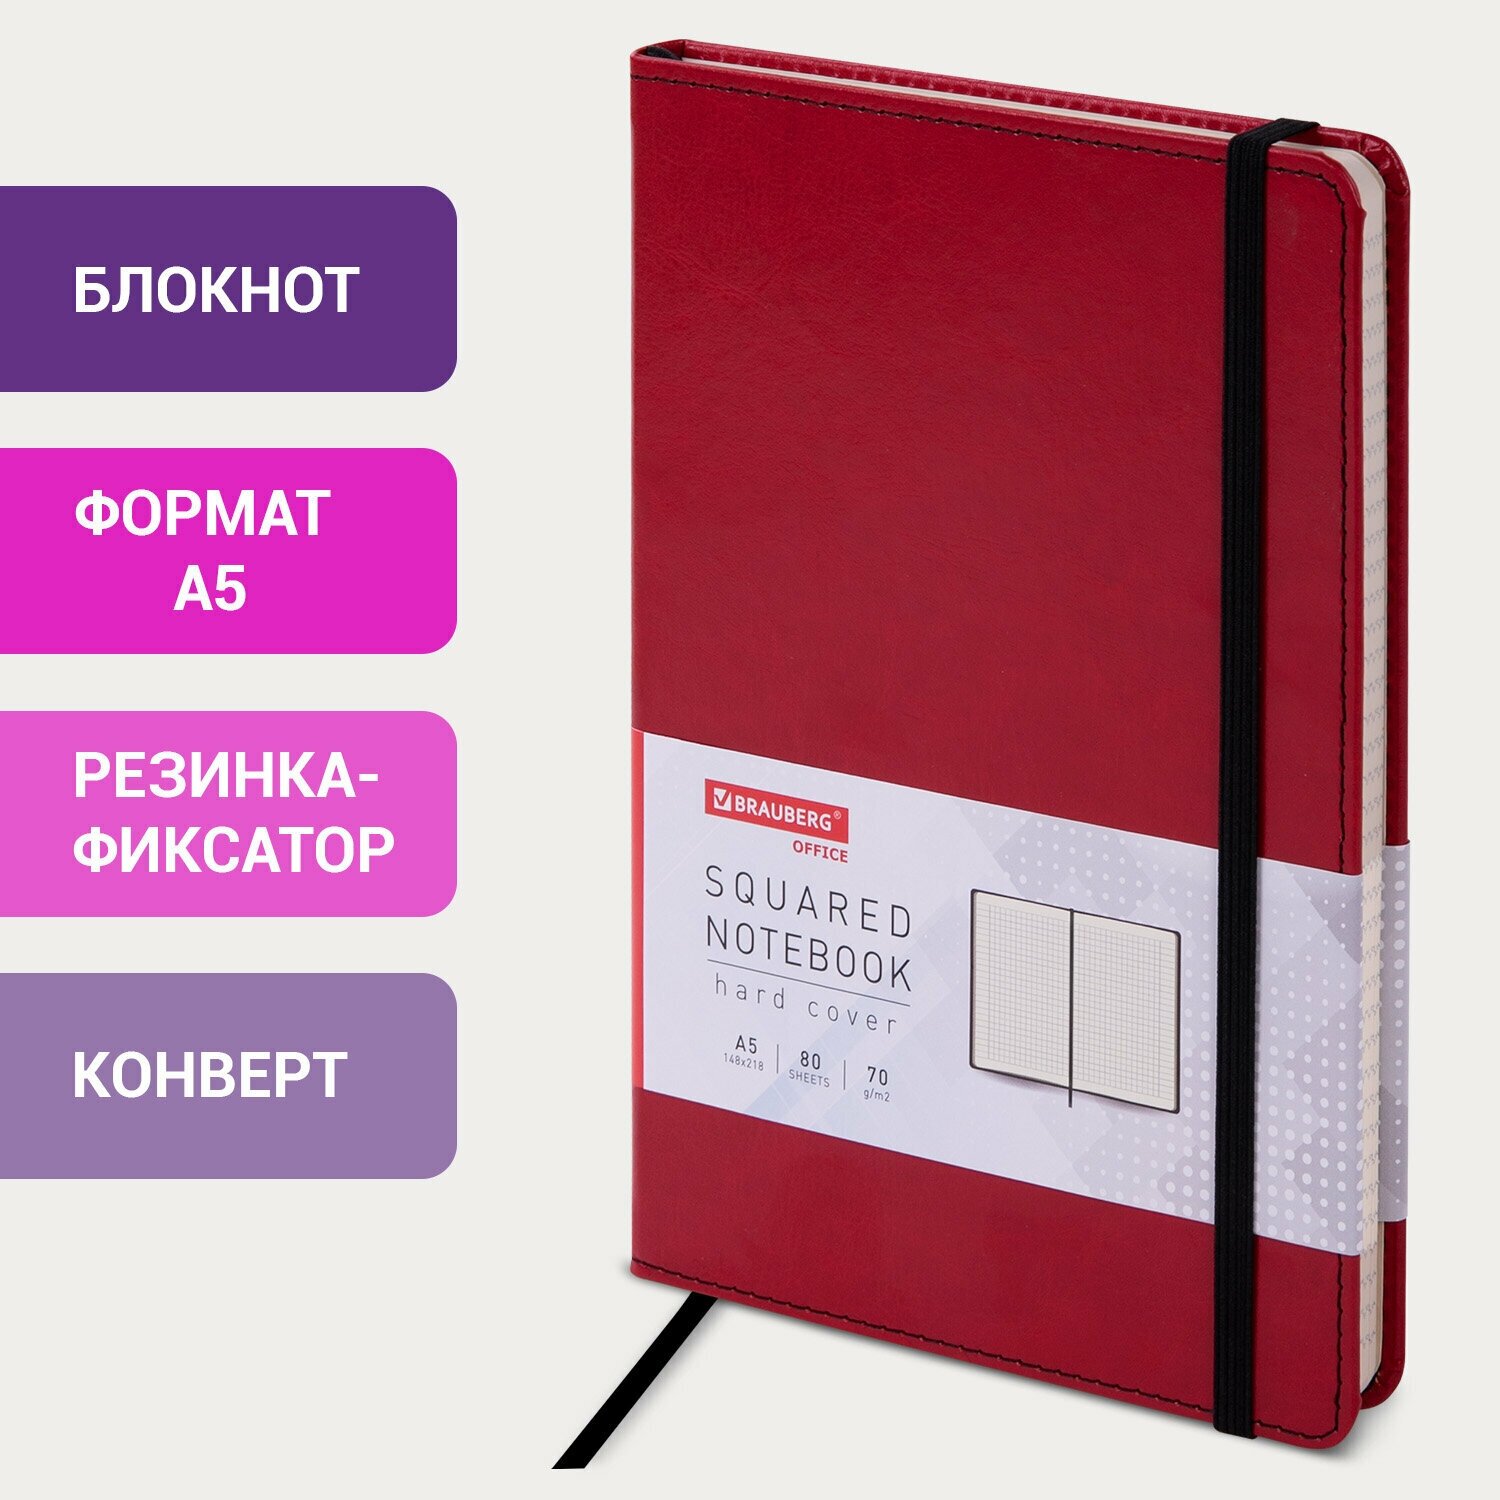 Бизнес-блокнот, записная книжка, тетрадь А5 (148x218 мм), Brauberg Office, под кожу, 80 л, резинка, клетка, красный, 111030